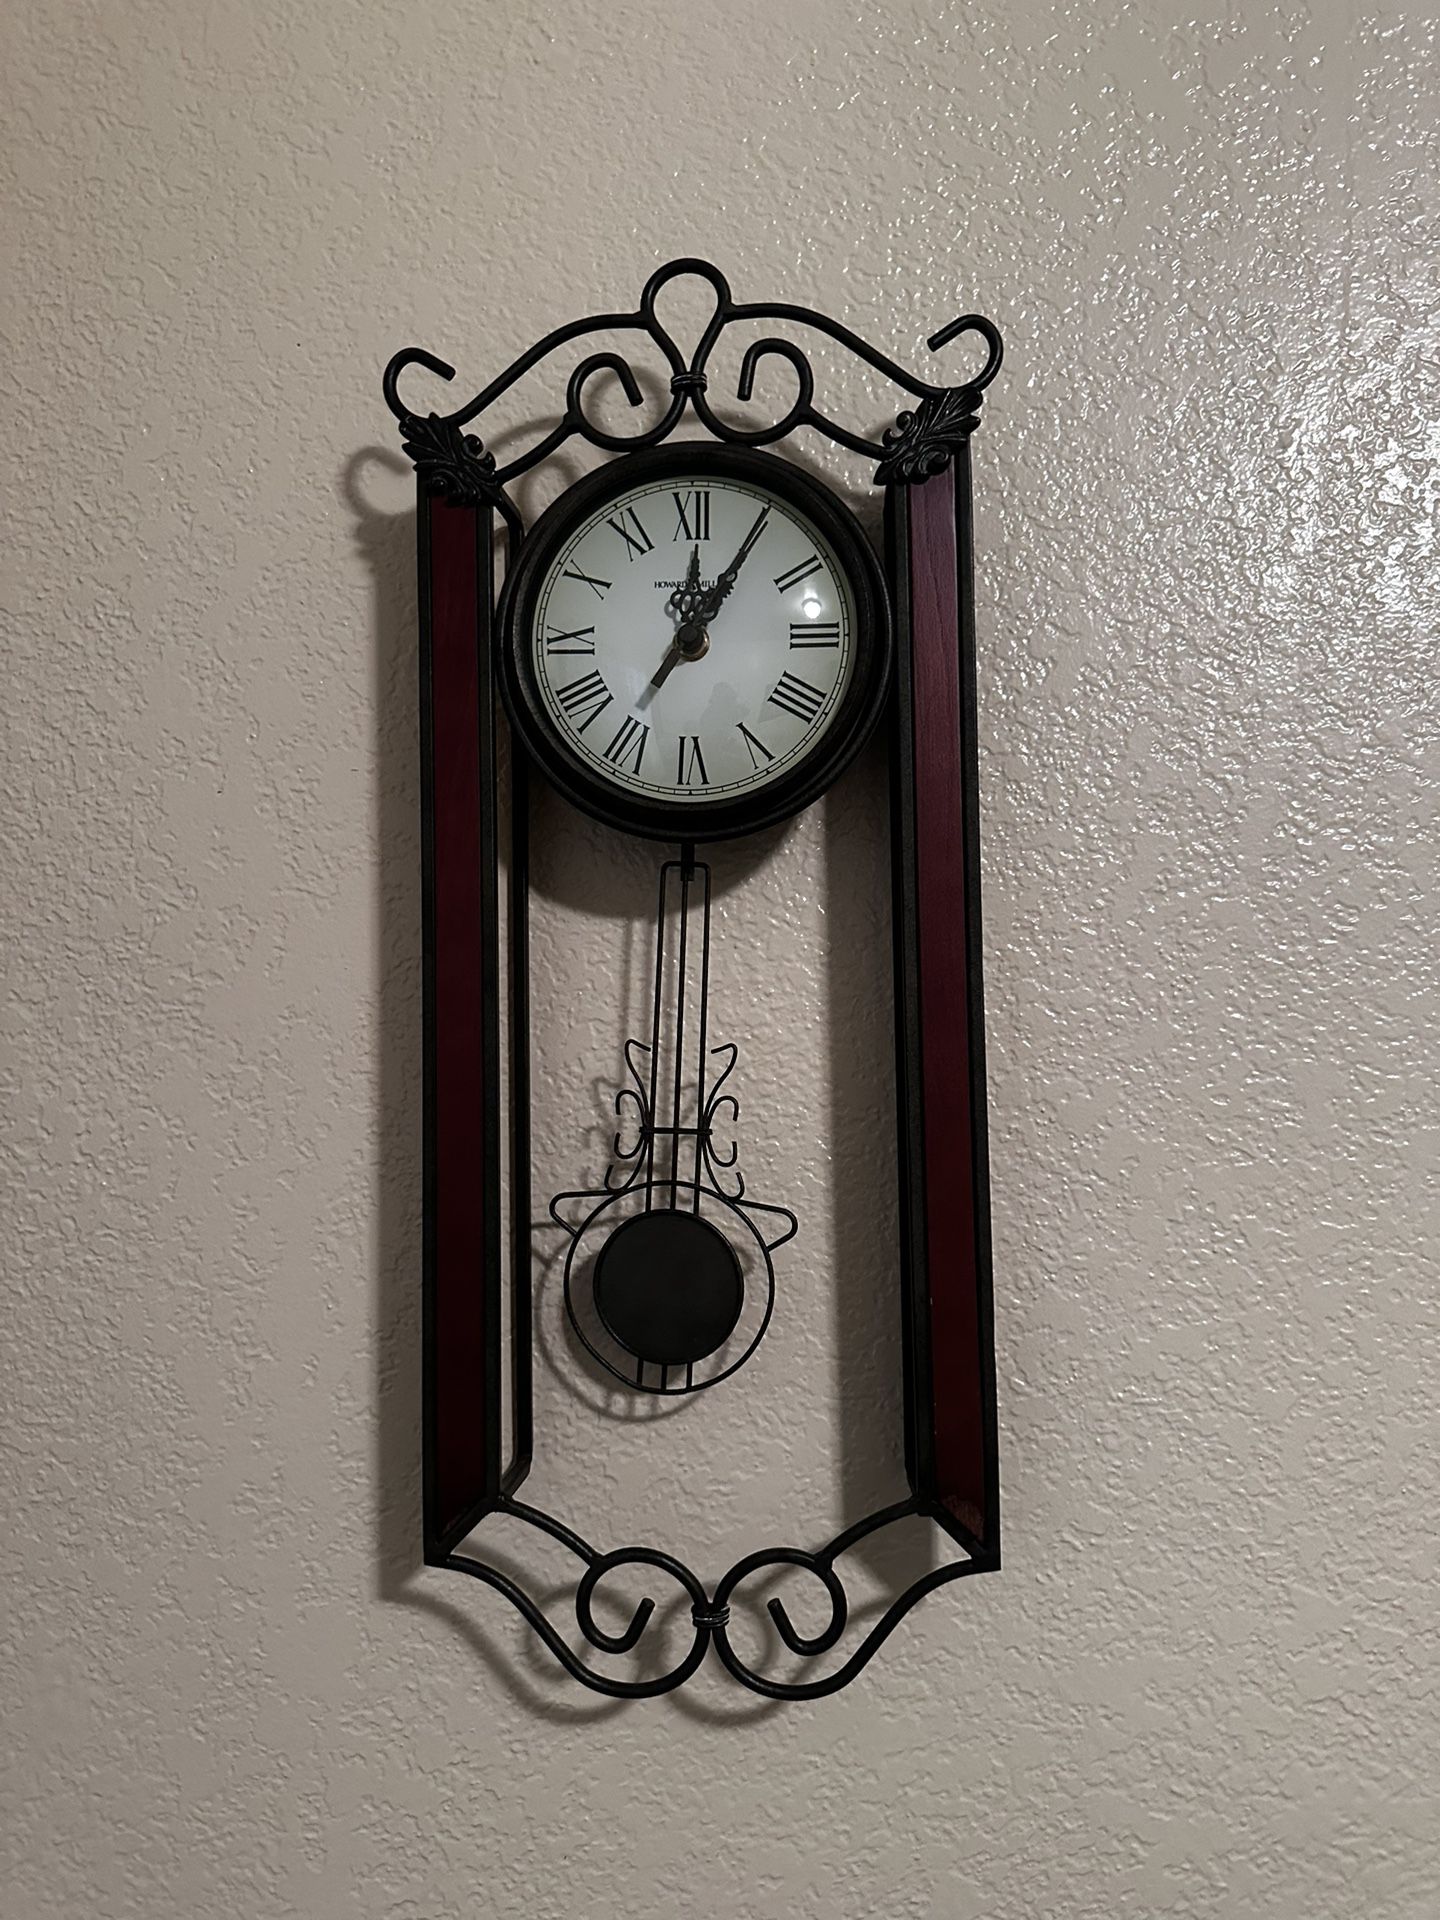 Howard Miller Pendulum Wall Clock